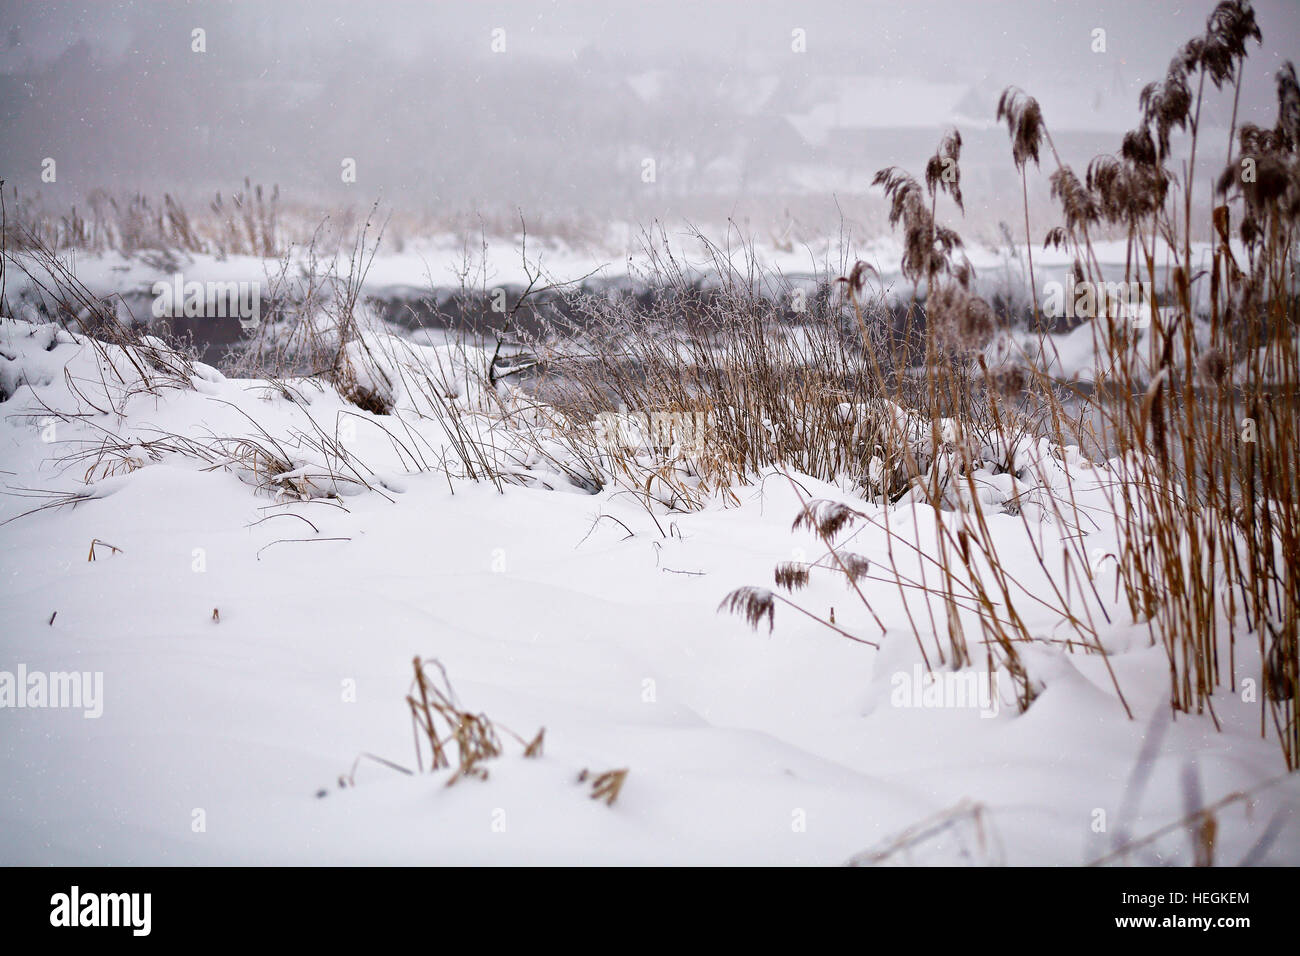 La neige et le givre sur la canne à sucre et l'herbe sur une rivière gelée misty. Couvert de neige. Banque D'Images